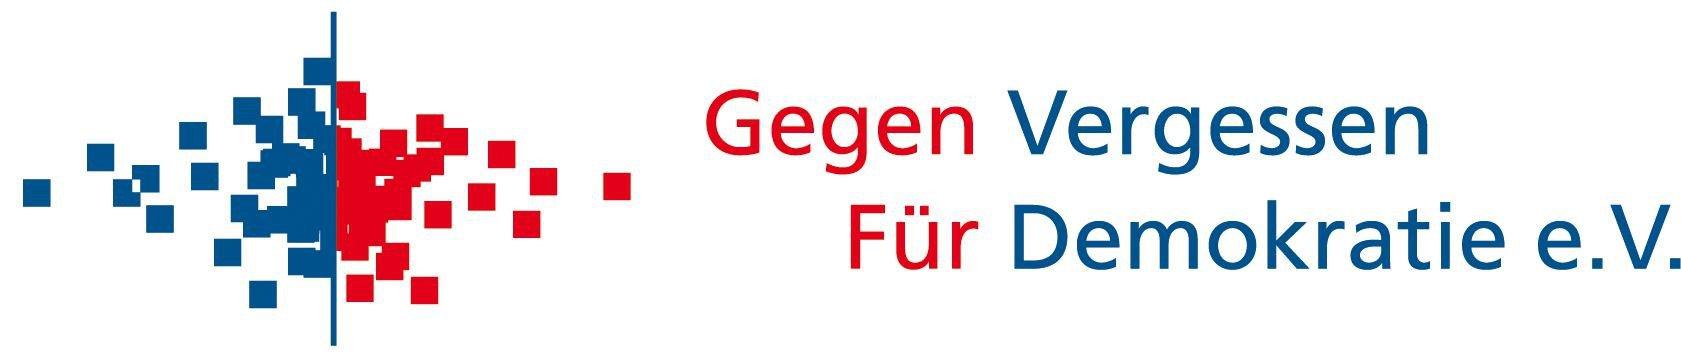 Logo Gegen Vergessen - Für Demokratie